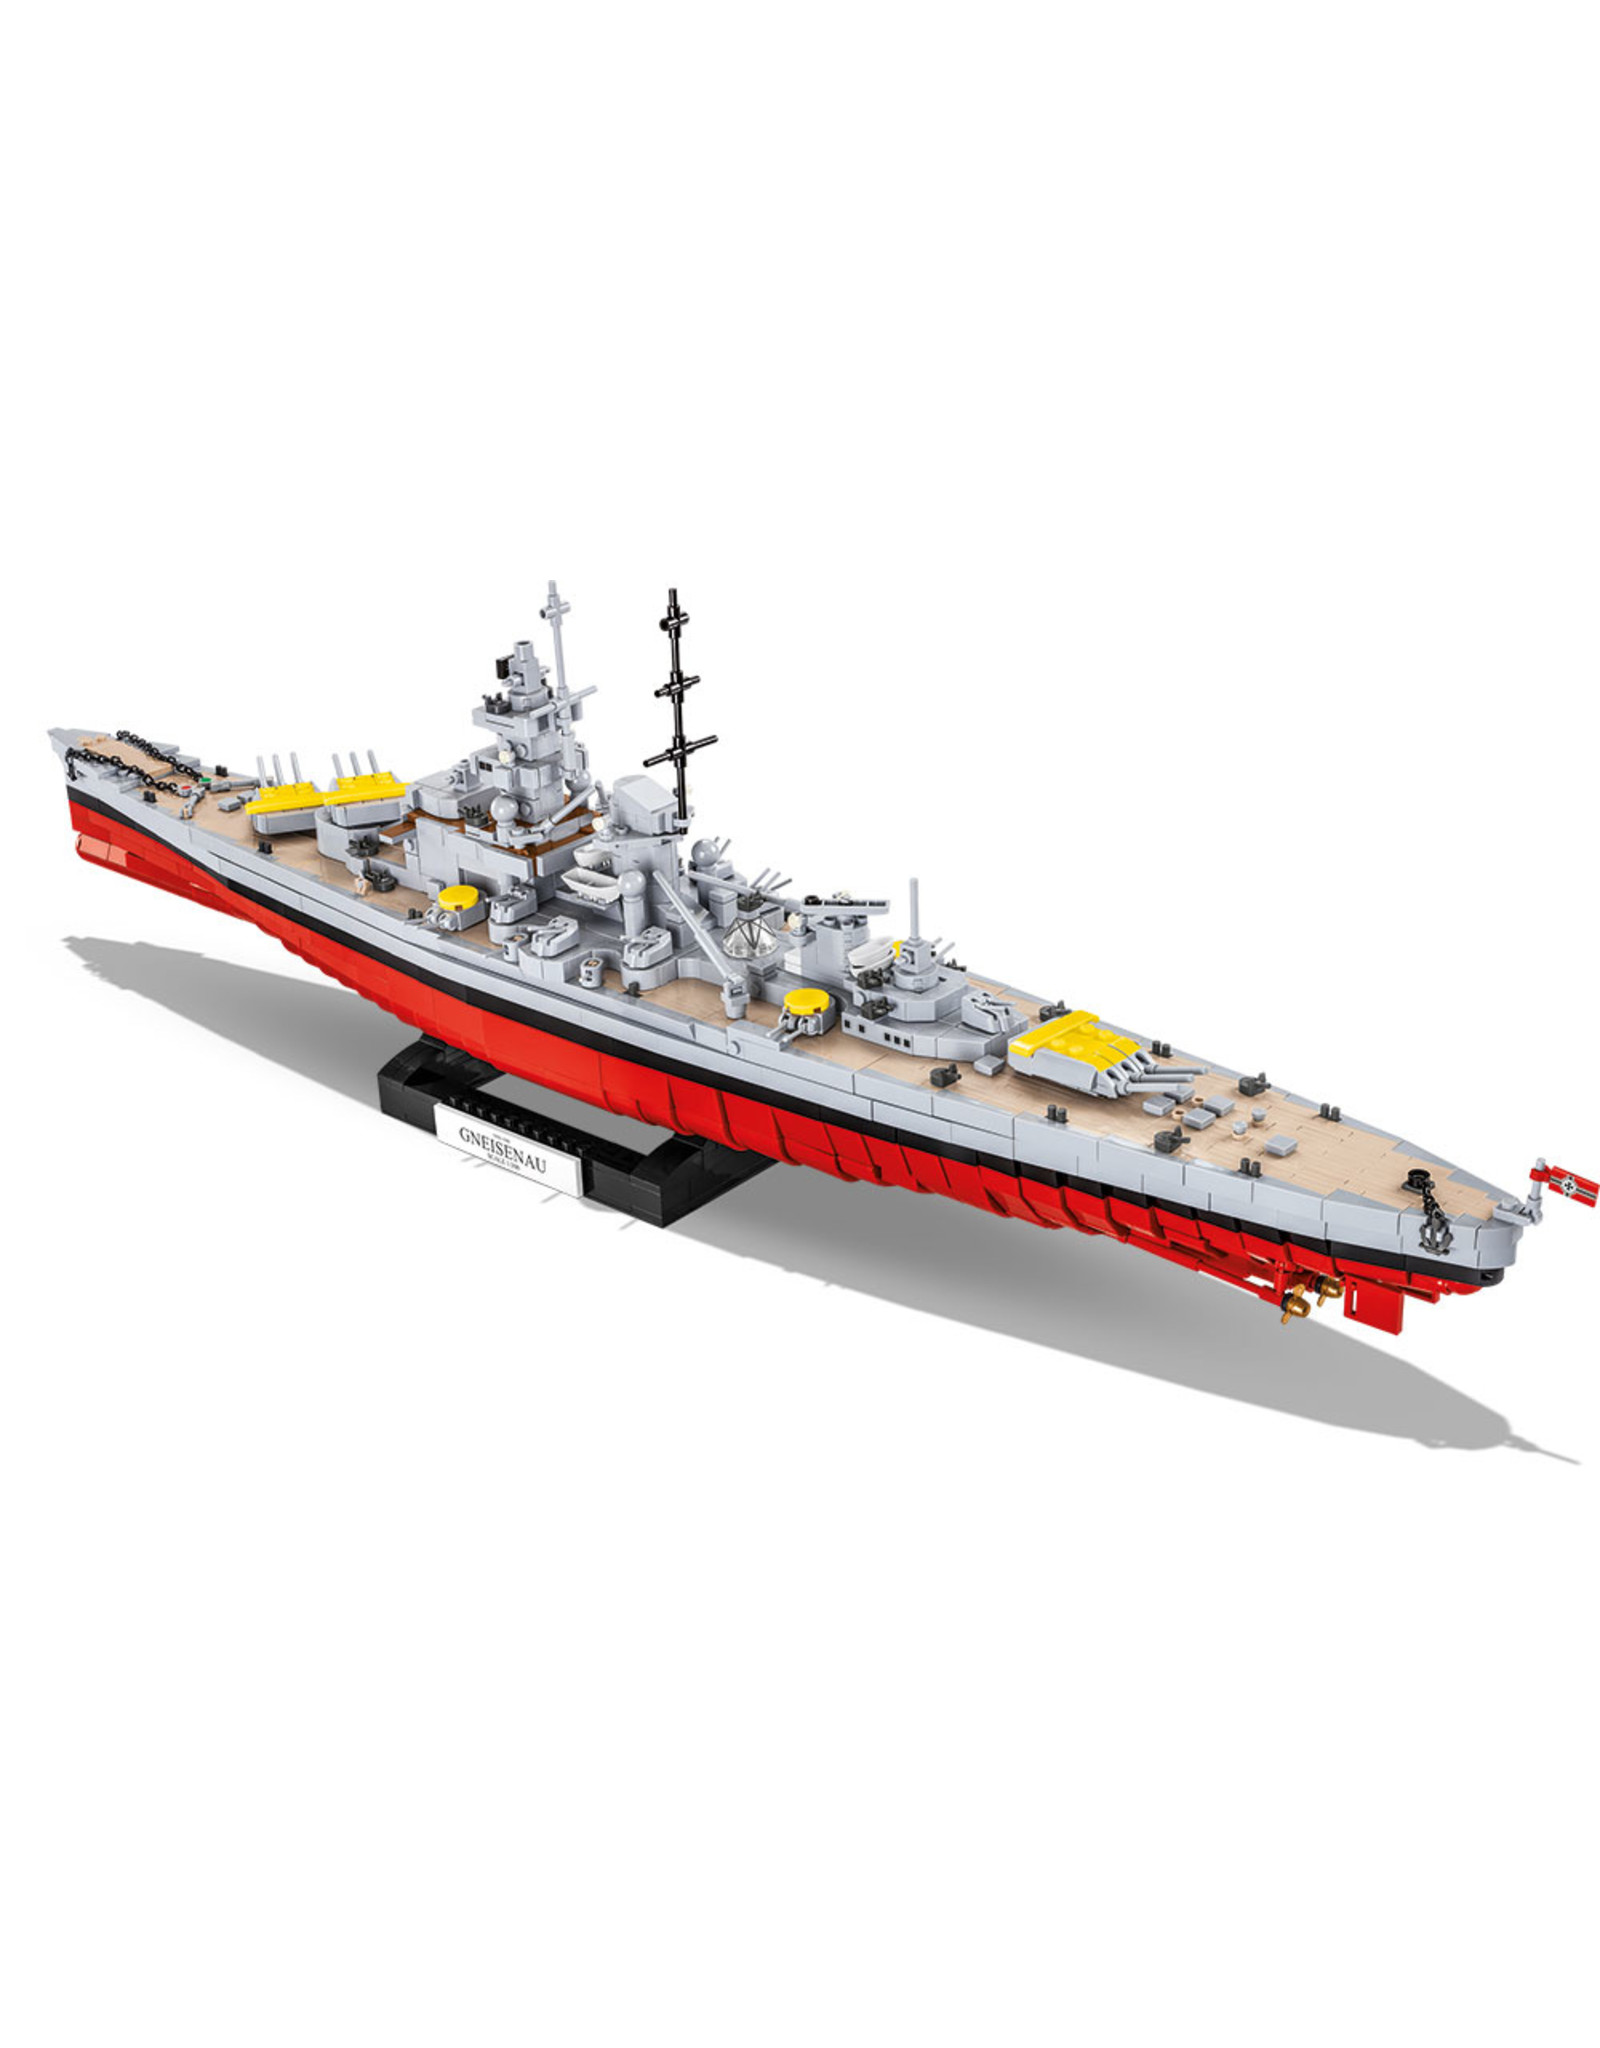 COBI 4835 Battleship Gneisenau